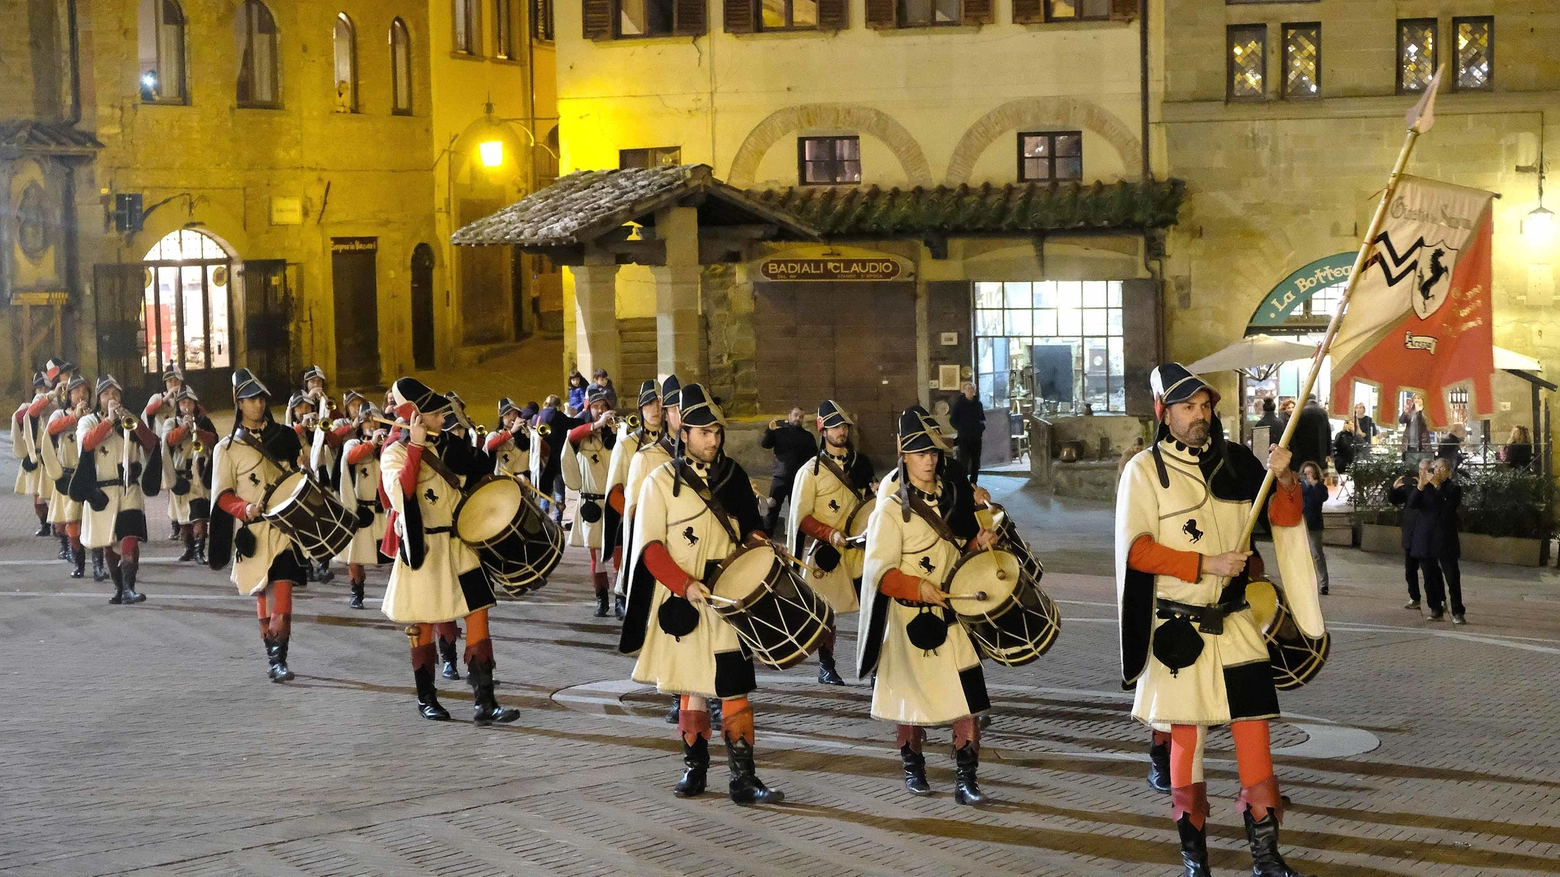 Capodanno dell’Annunciazione  Il corteo storico invade il centro  Mille figuranti da tutta la Toscana